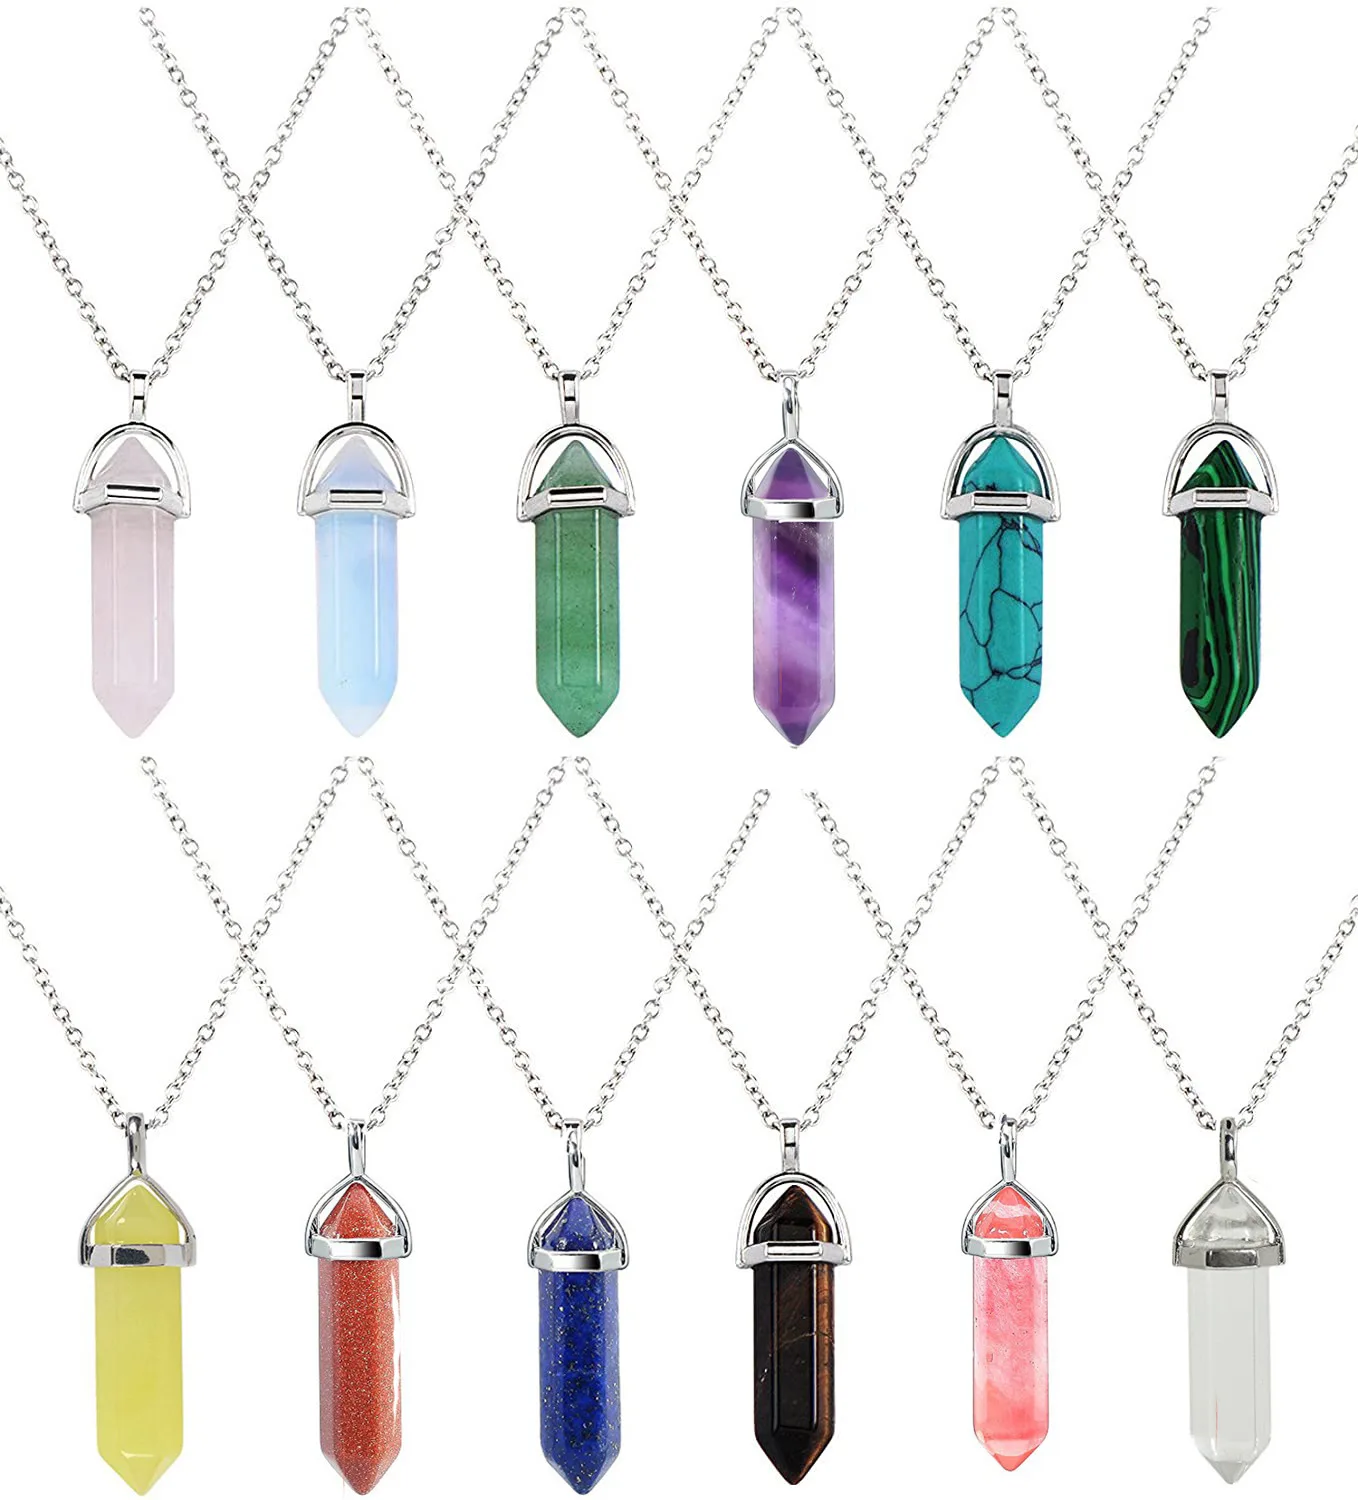 

24PCS/Lot Natural Stone Quartz Crystal Opal agates Hexagonal Column Pendulum Pendant Chains Necklace Fashion charms Pendant